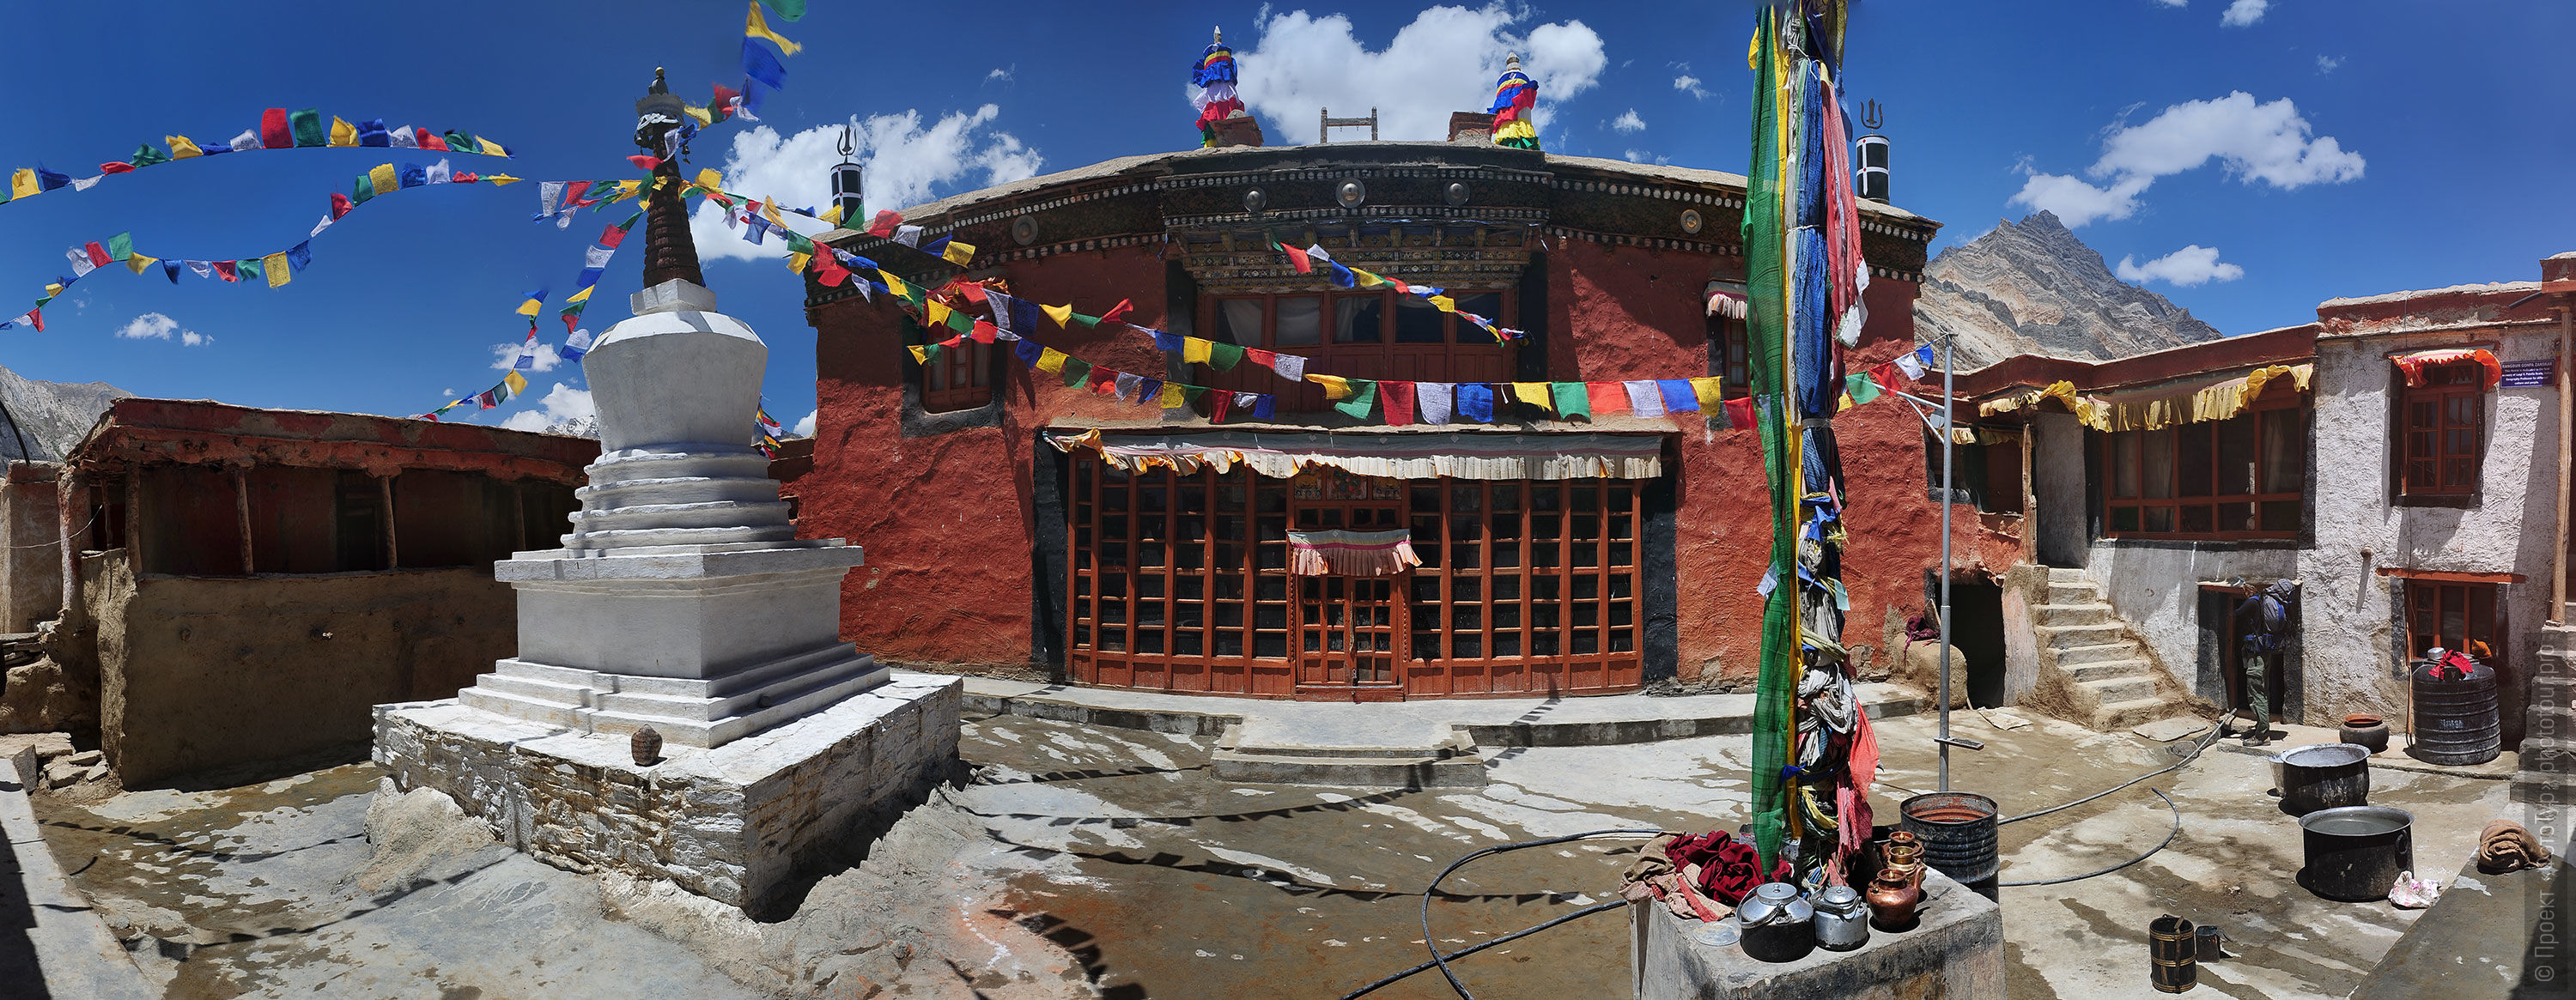 Buddhist monastery Rangdum Gonpa, Zanskar. Budget photo tour Legends of Tibet: Zanskar, September 15 - September 26, 2021.